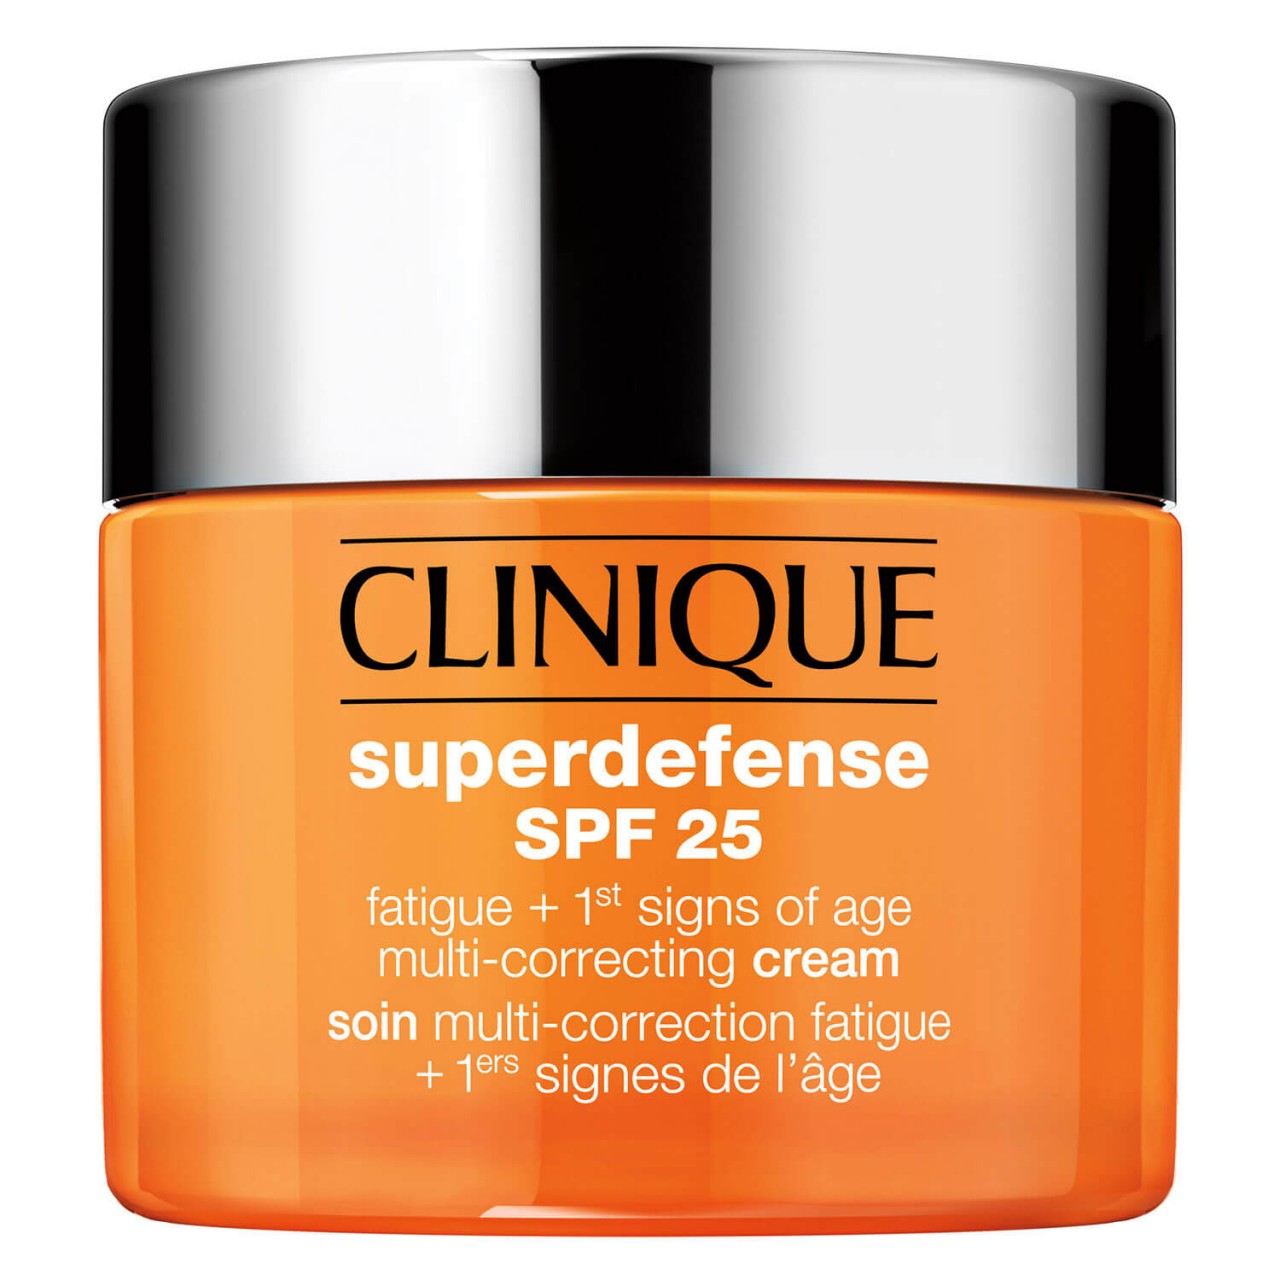 Clinique - Superdefense SPF25 Fatigue + 1st Signs of Age Multi Correcting Cream